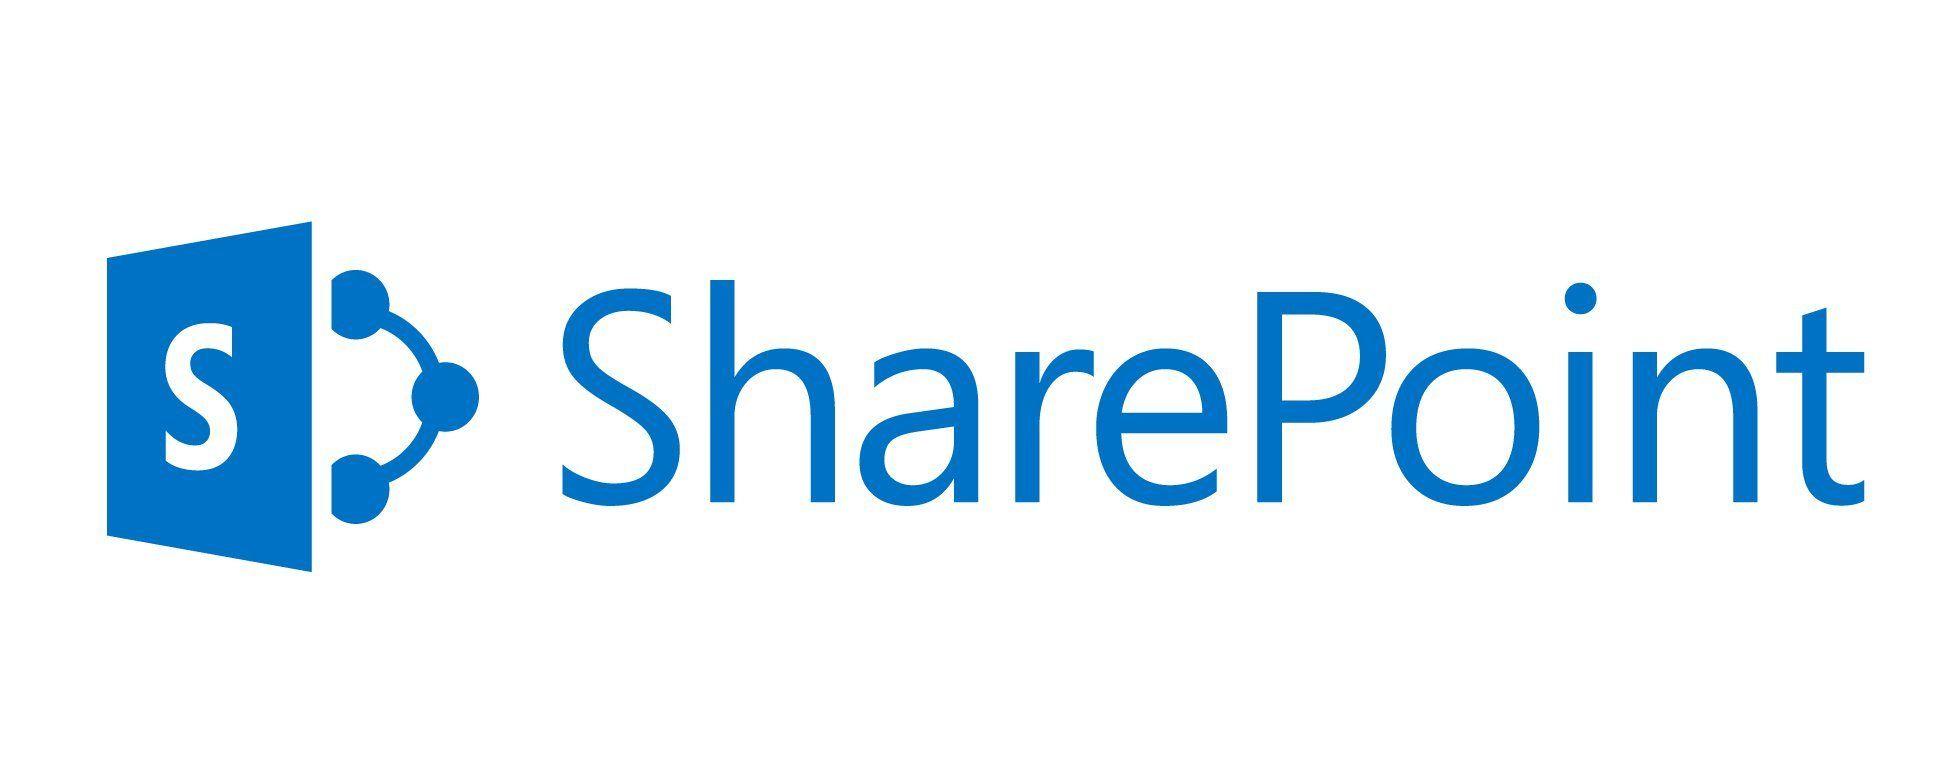 SharePoint Logo - Sharepoint logo